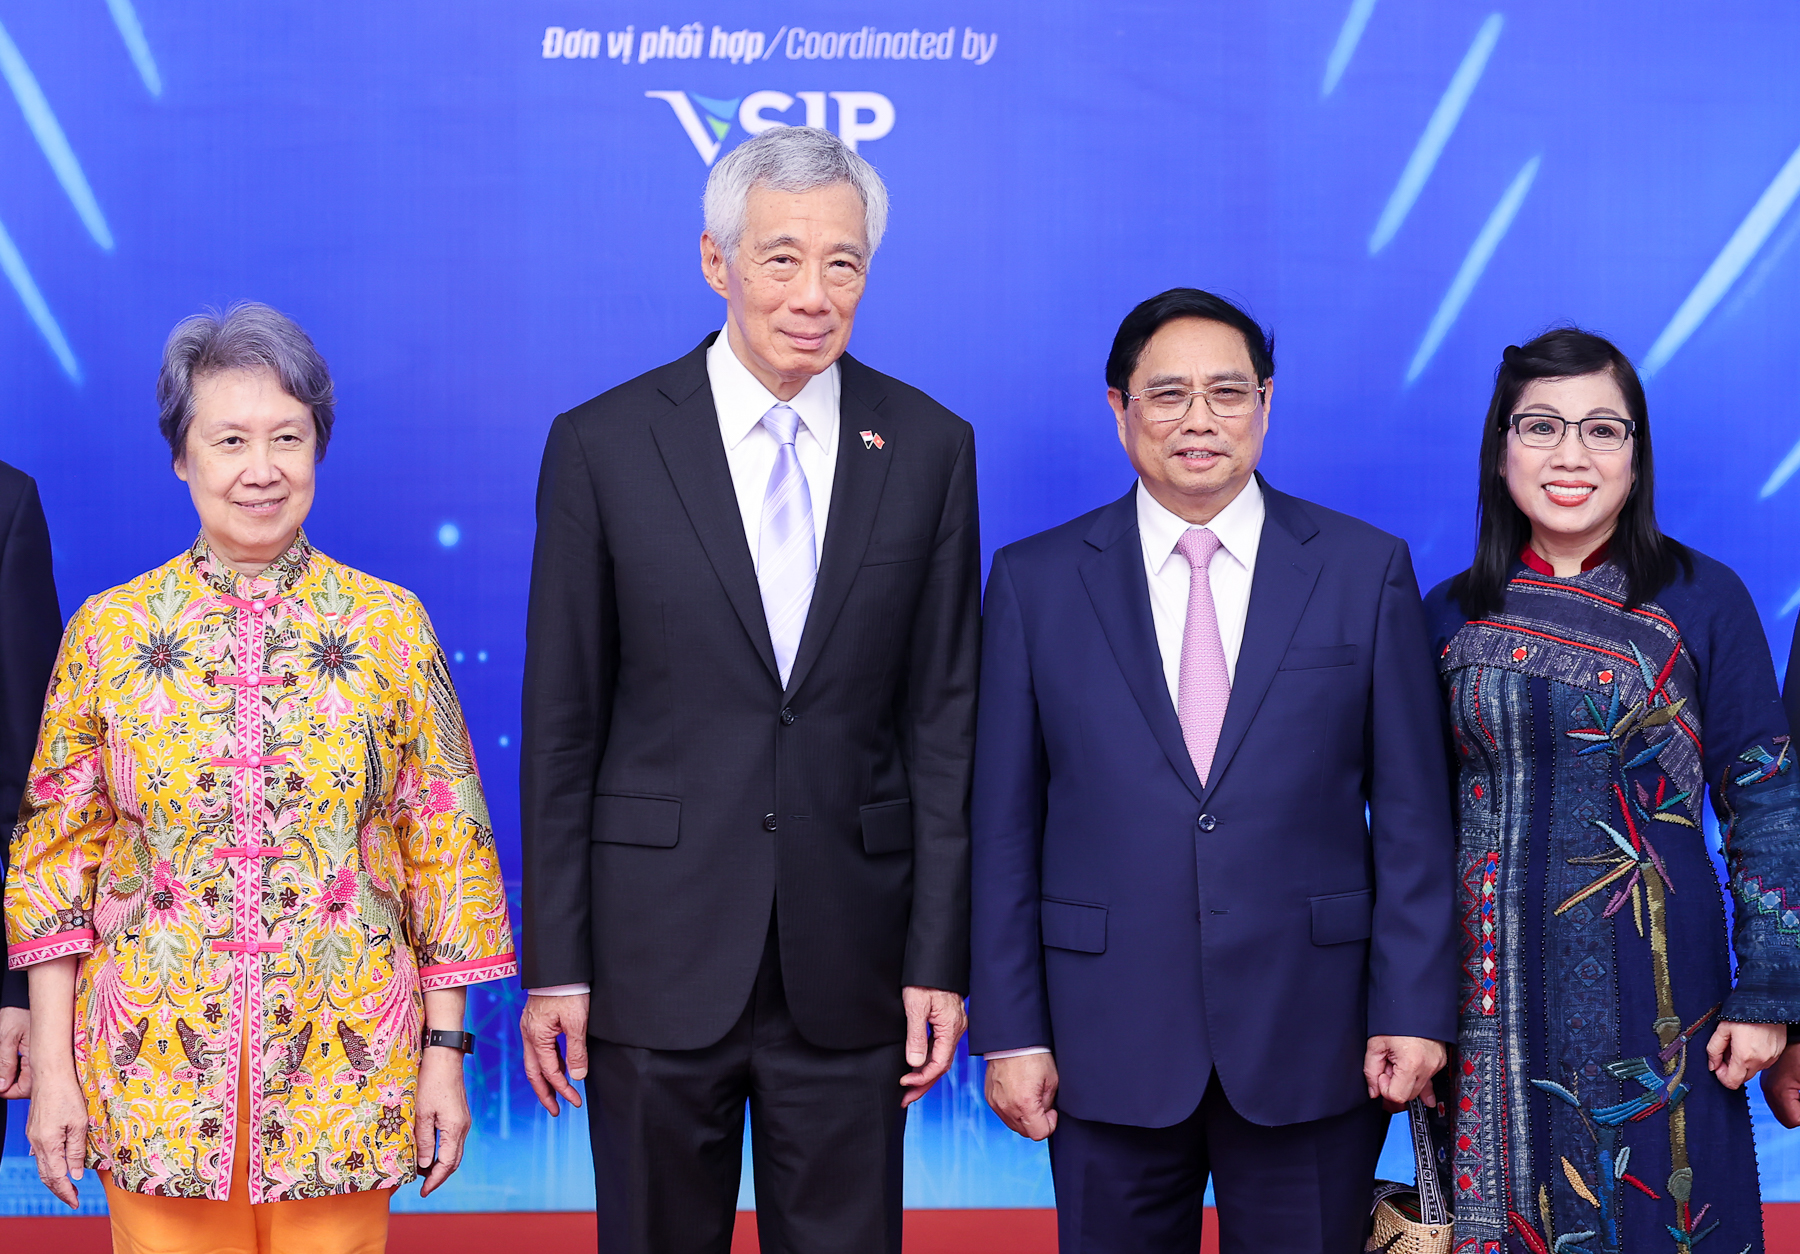  Việt Nam-Singapore: Phát triển 17 dự án VSIP mới - Ảnh 6.